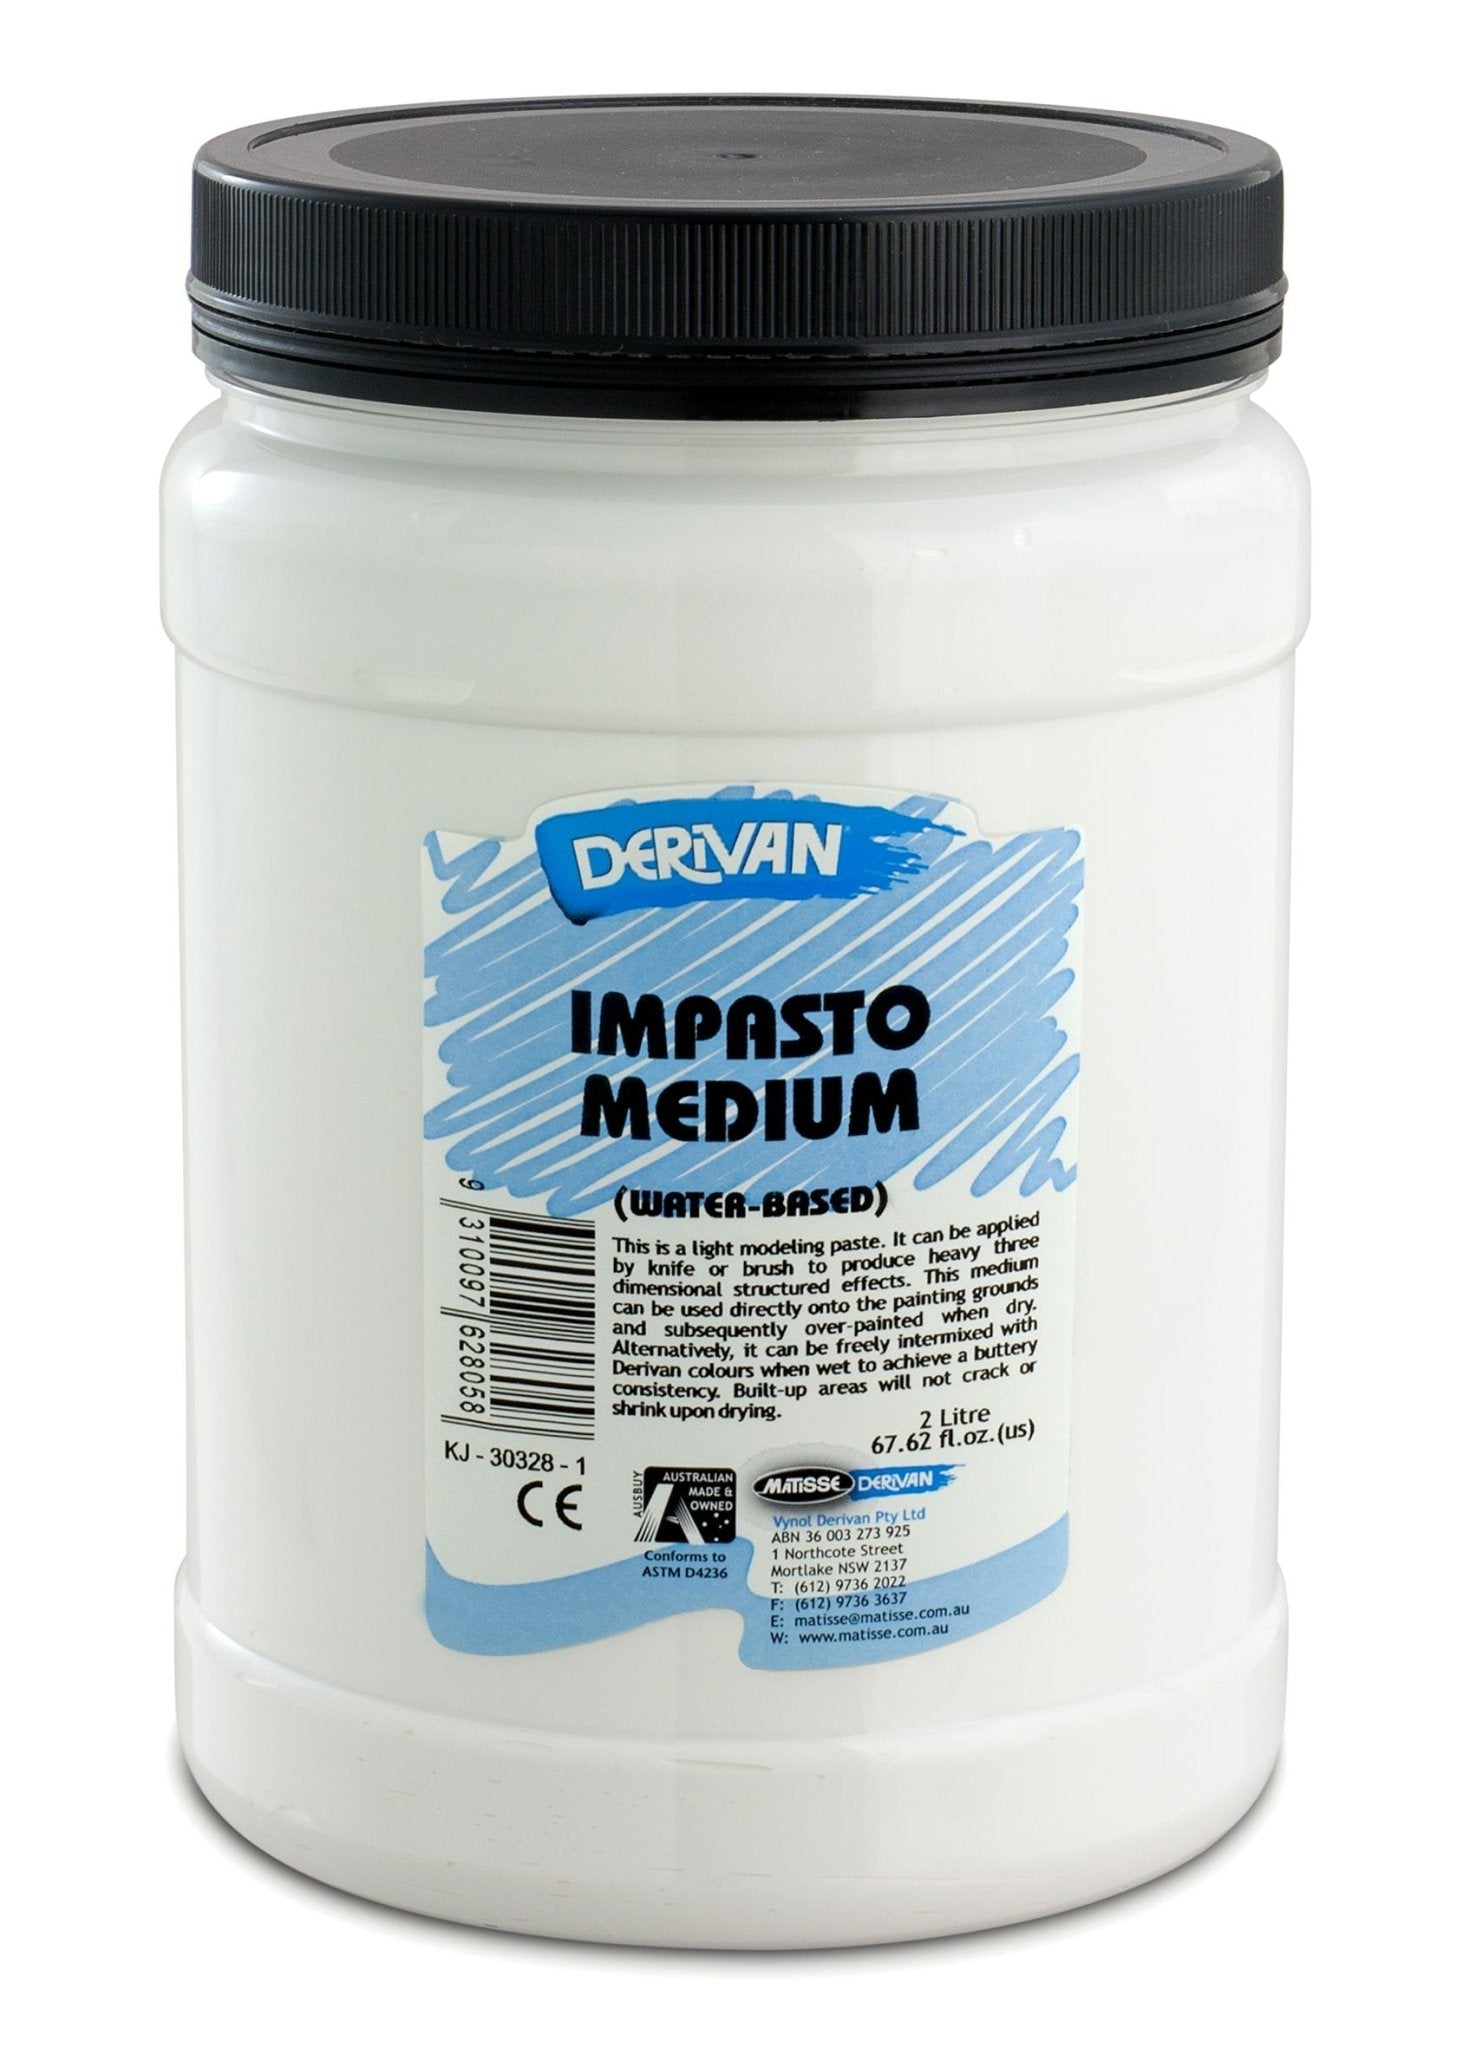 Derivan Impasto Medium 2 Litre - theartshop.com.au